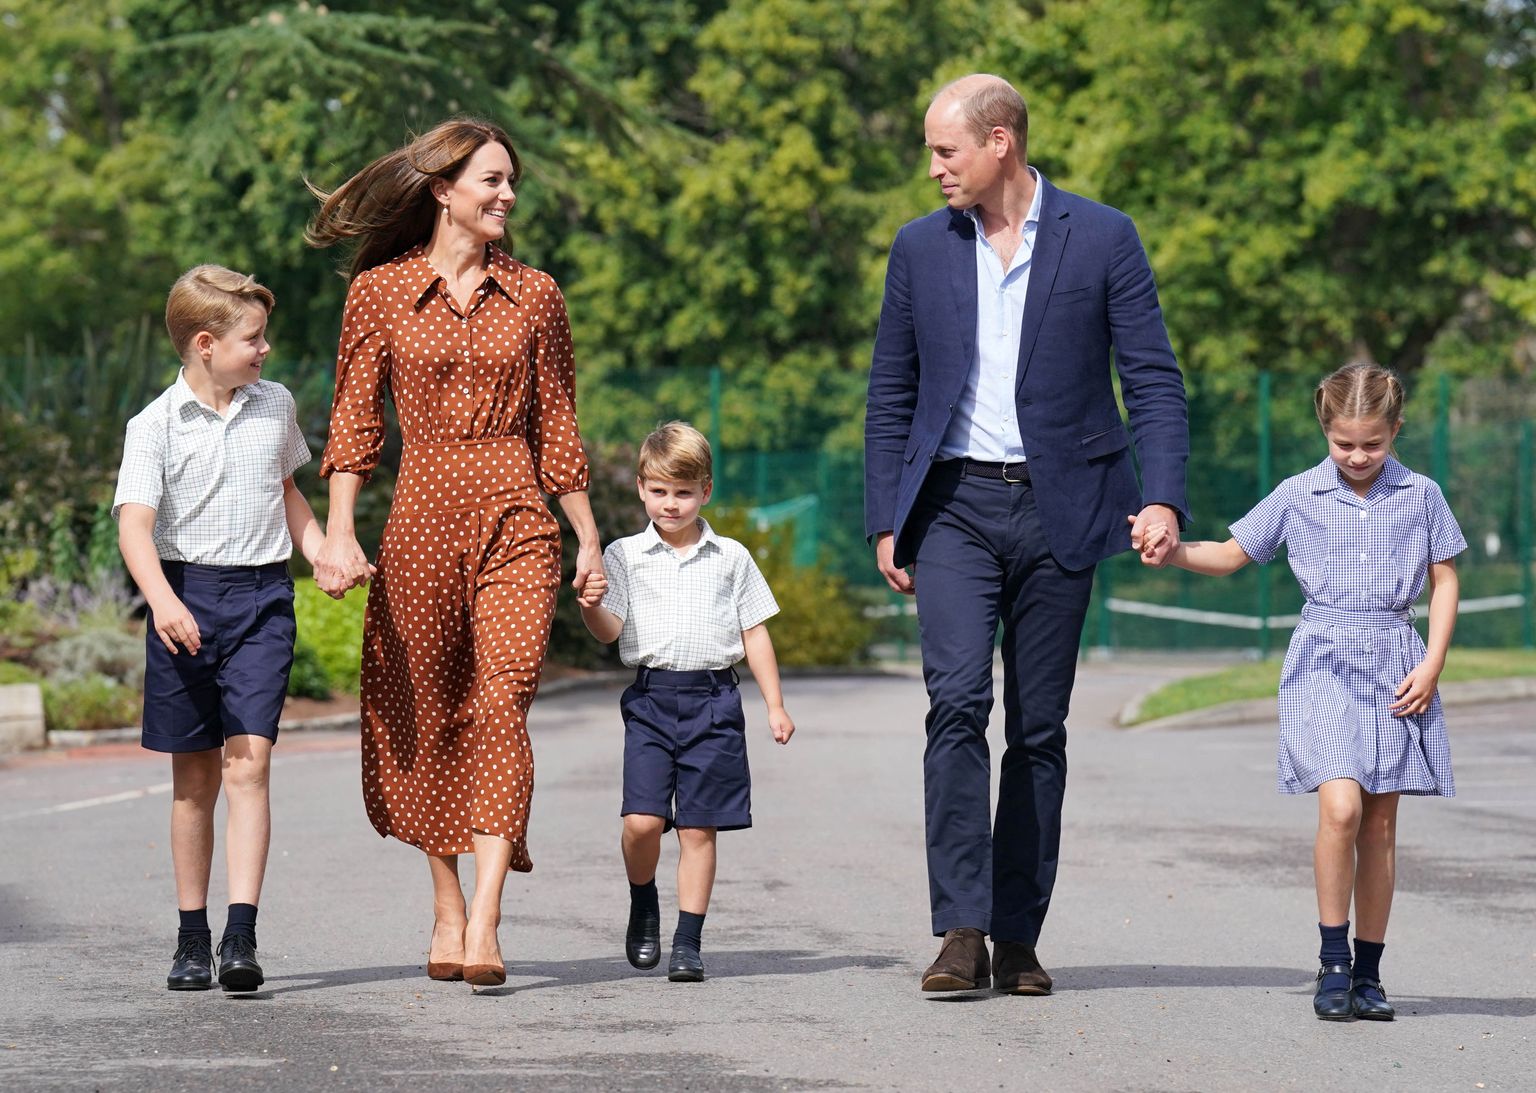 Prints William ja printsess Catherine, kes kuningas Charles III poolt Walesi printsiks ja printsessiks nimetati, lastega 7. septembril.